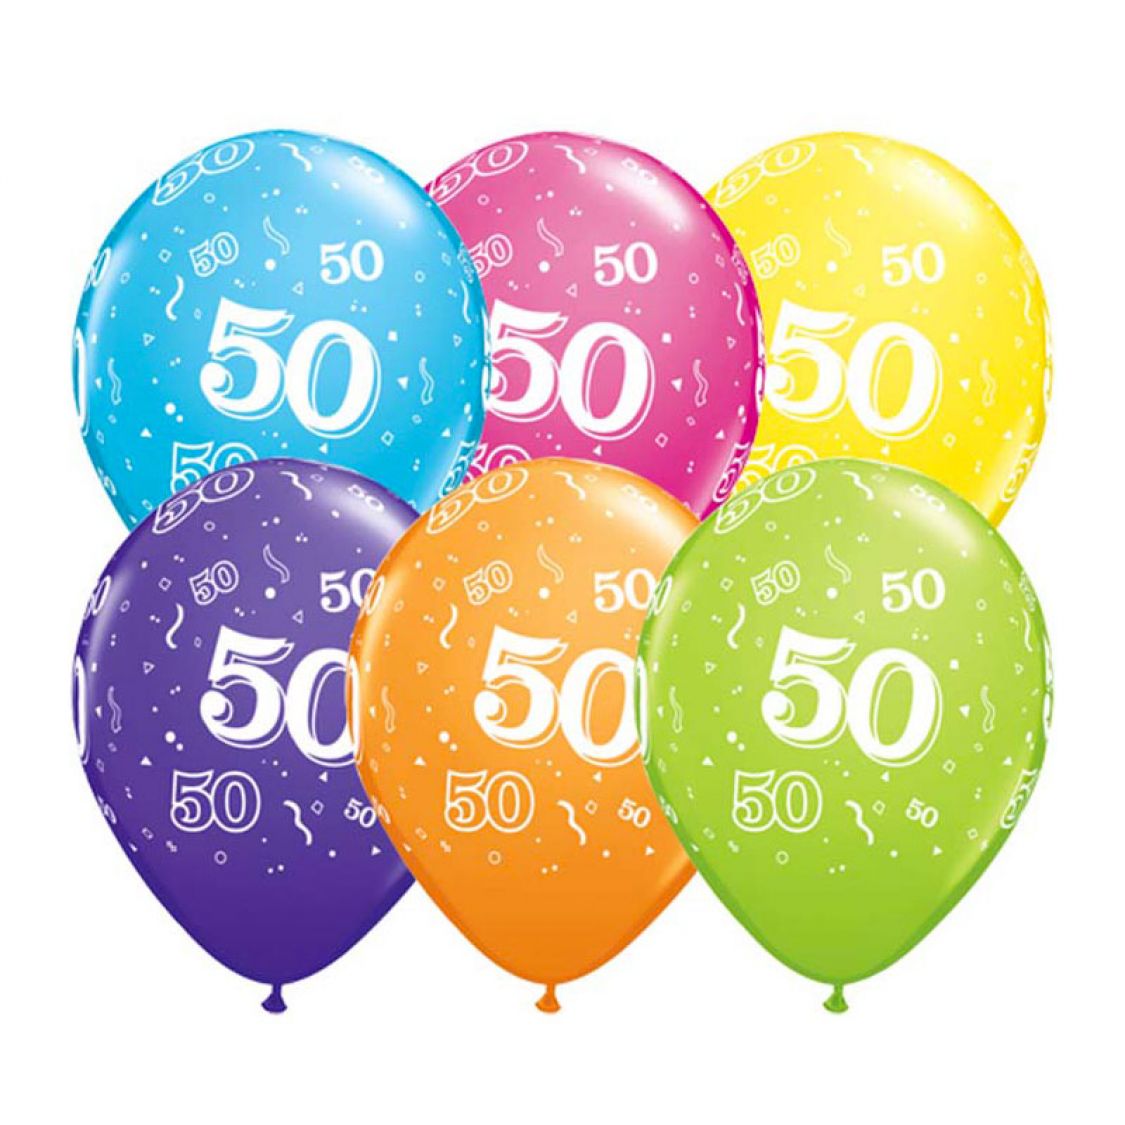 Ballon Qualatex 50 ans assortiment tropical